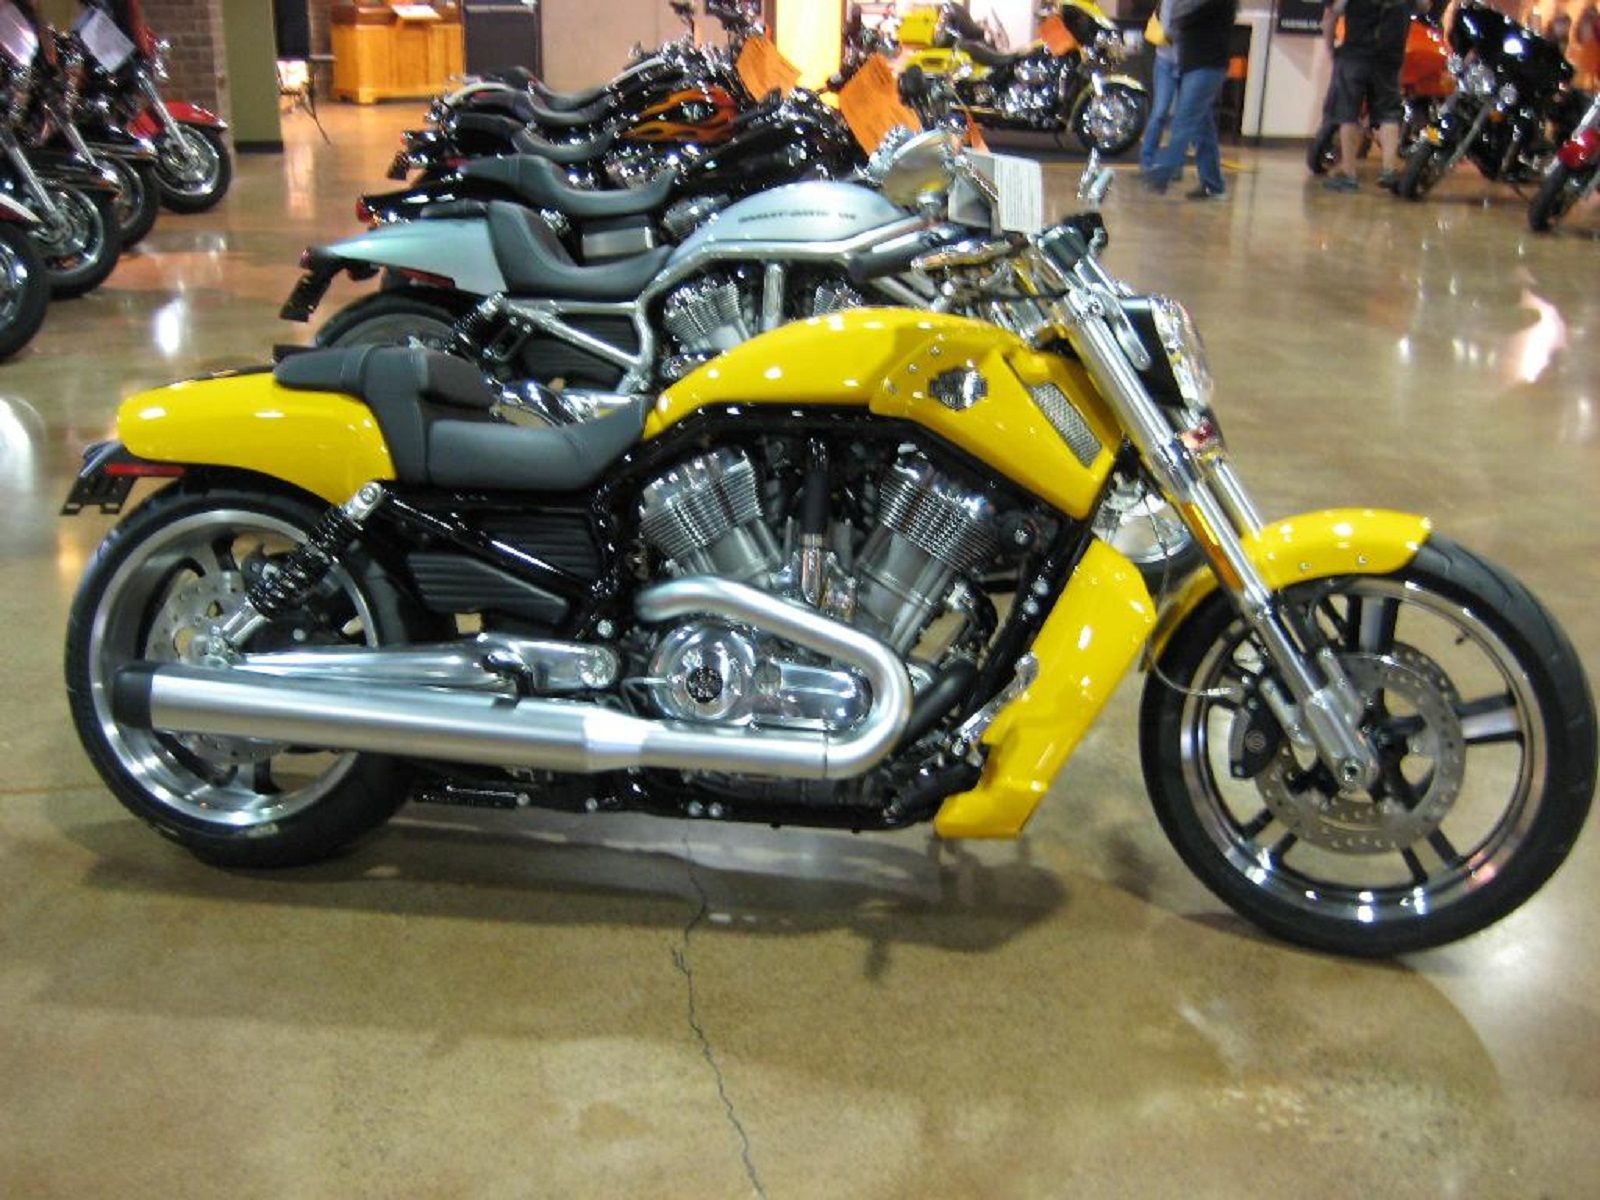 2012 Harley-Davidson VRSCF V-Rod Muscle